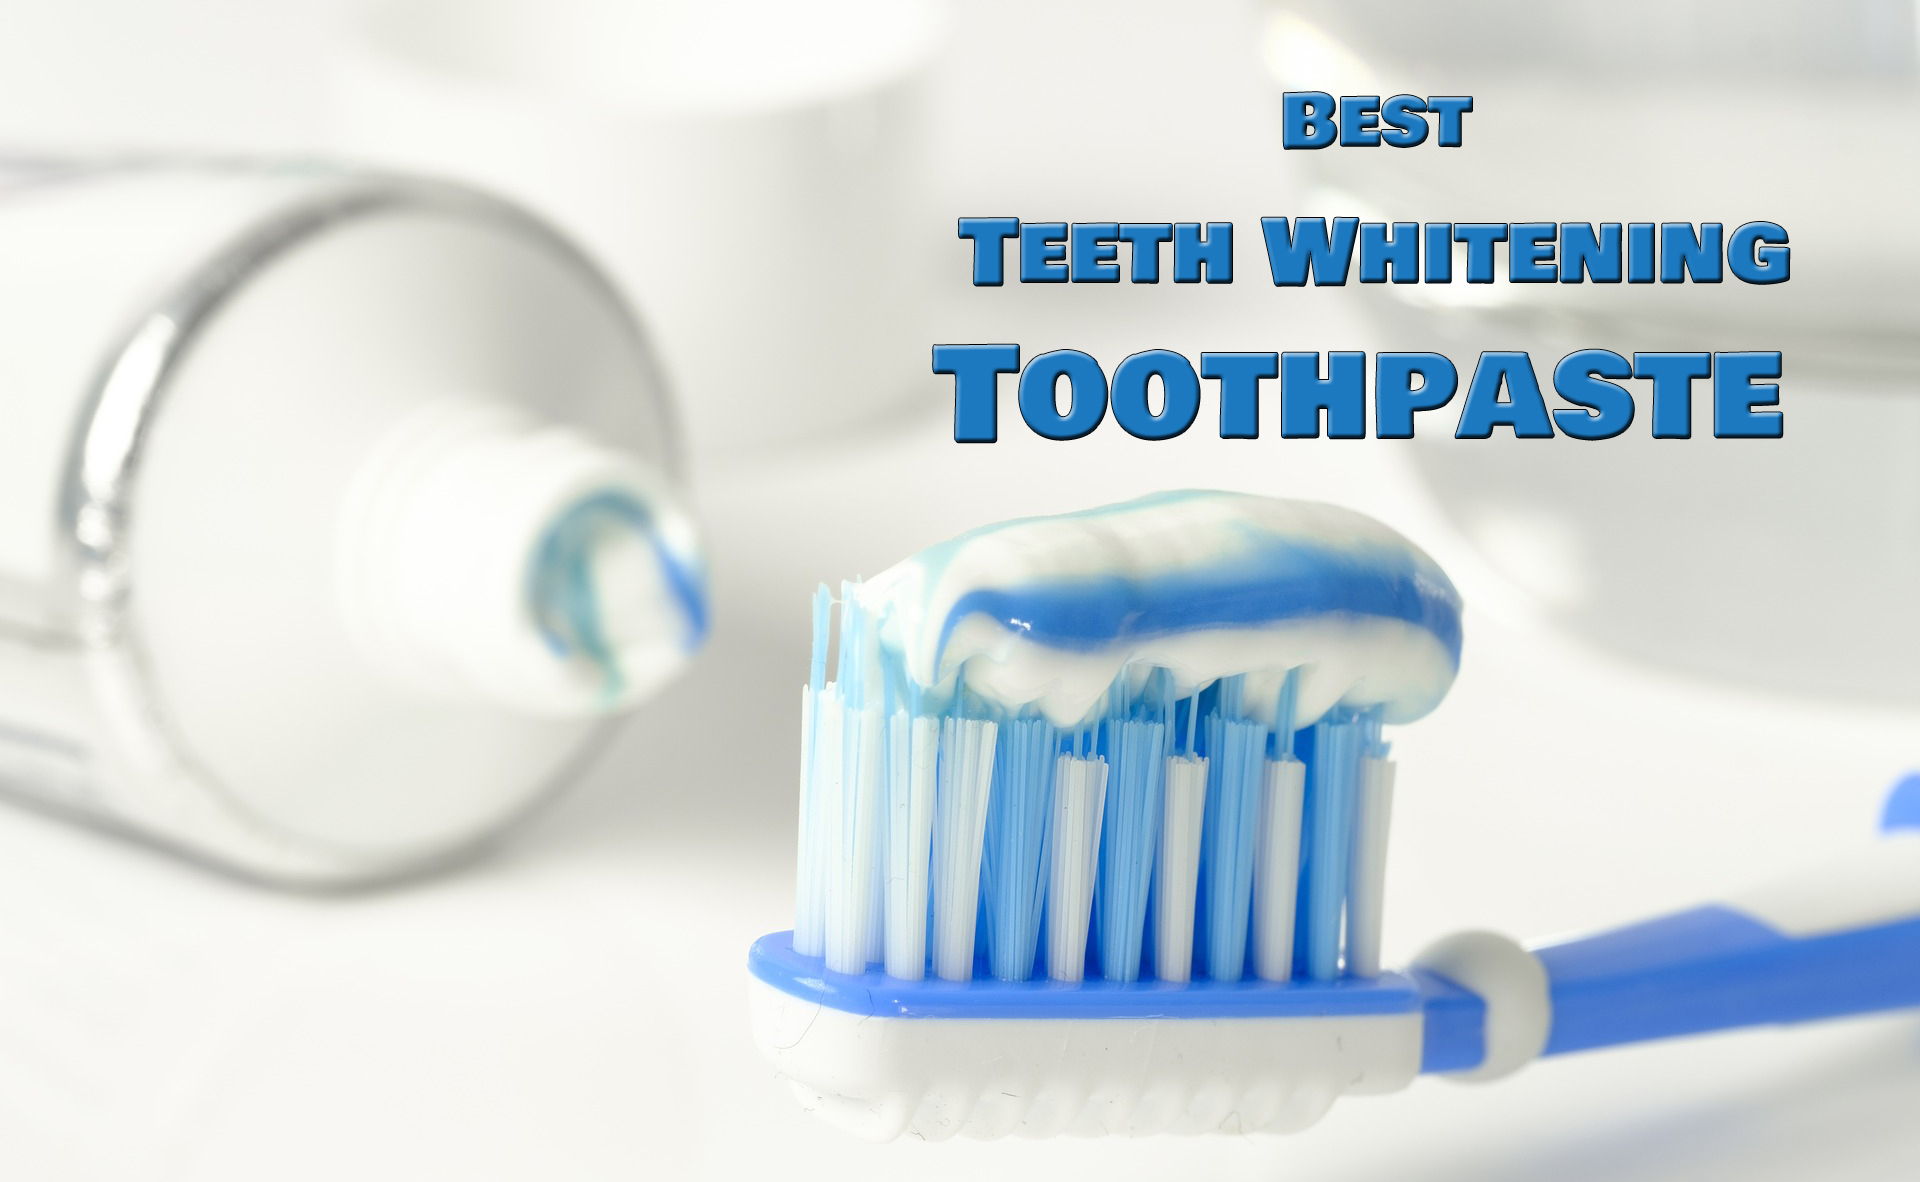 Best Whitening Toothpaste